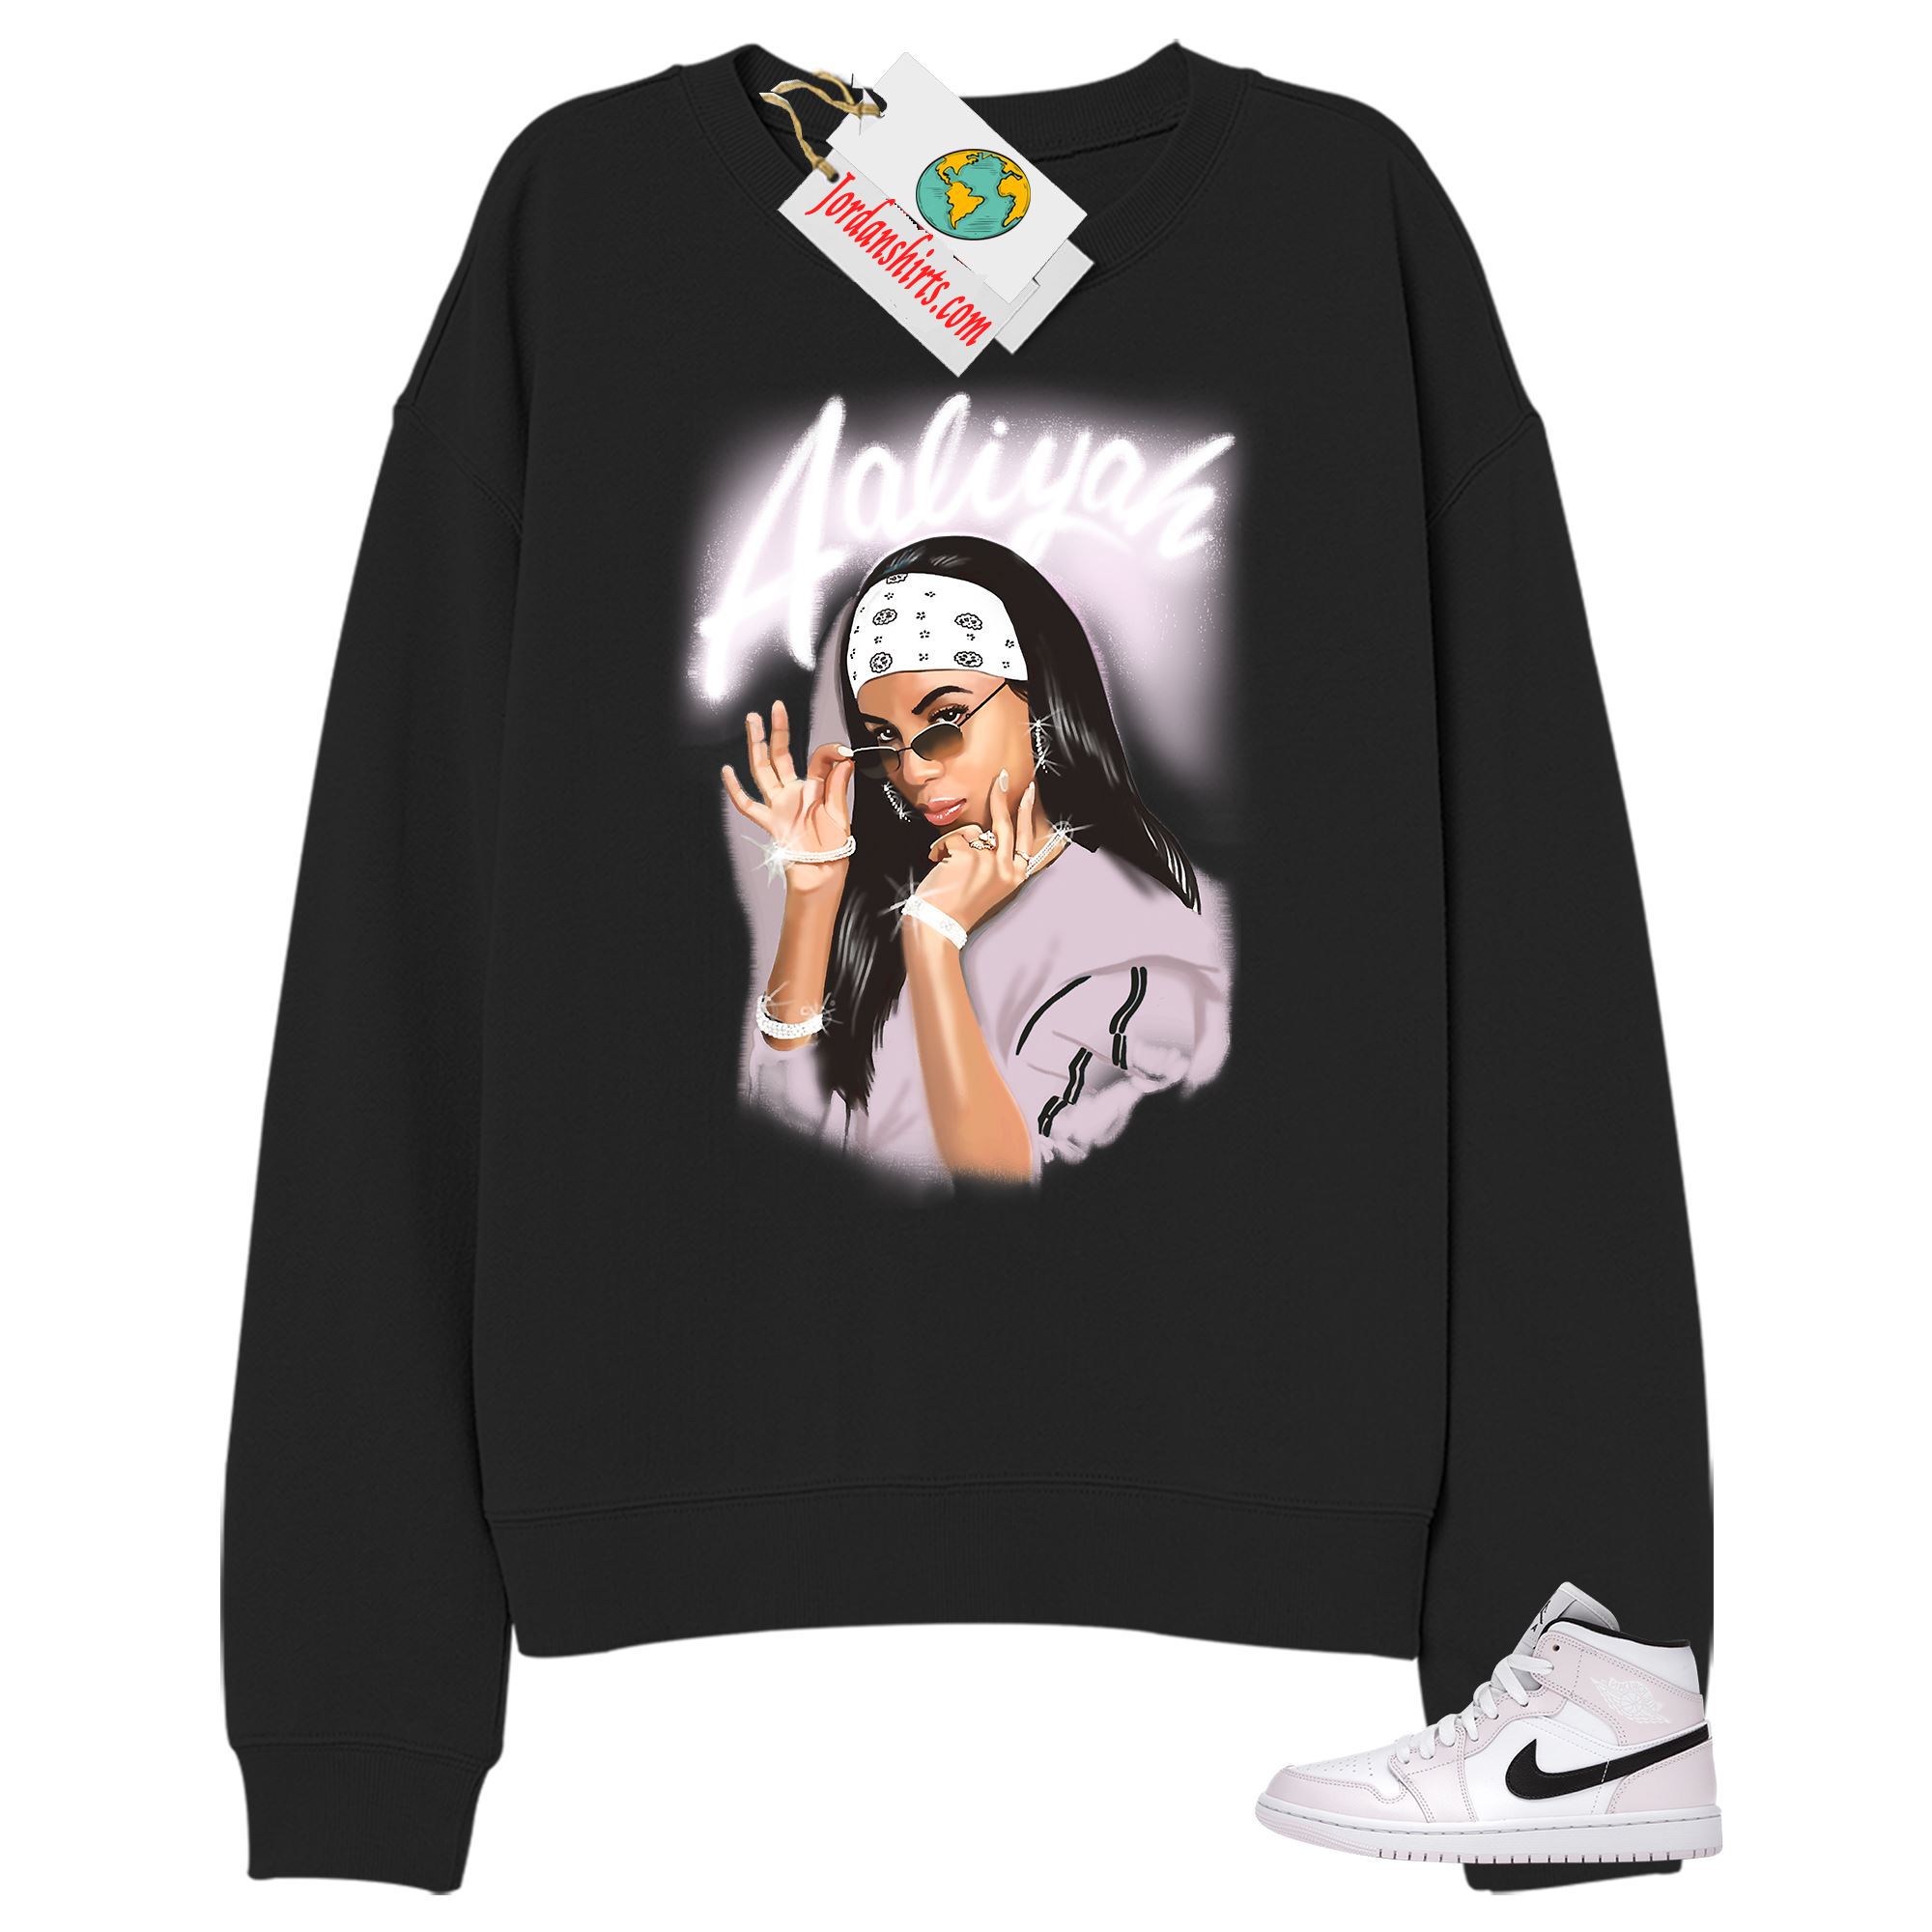 Jordan 1 Sweatshirt, Aaliyah Black Sweatshirt Air Jordan 1 Barely Rose 1s Plus Size Up To 5xl